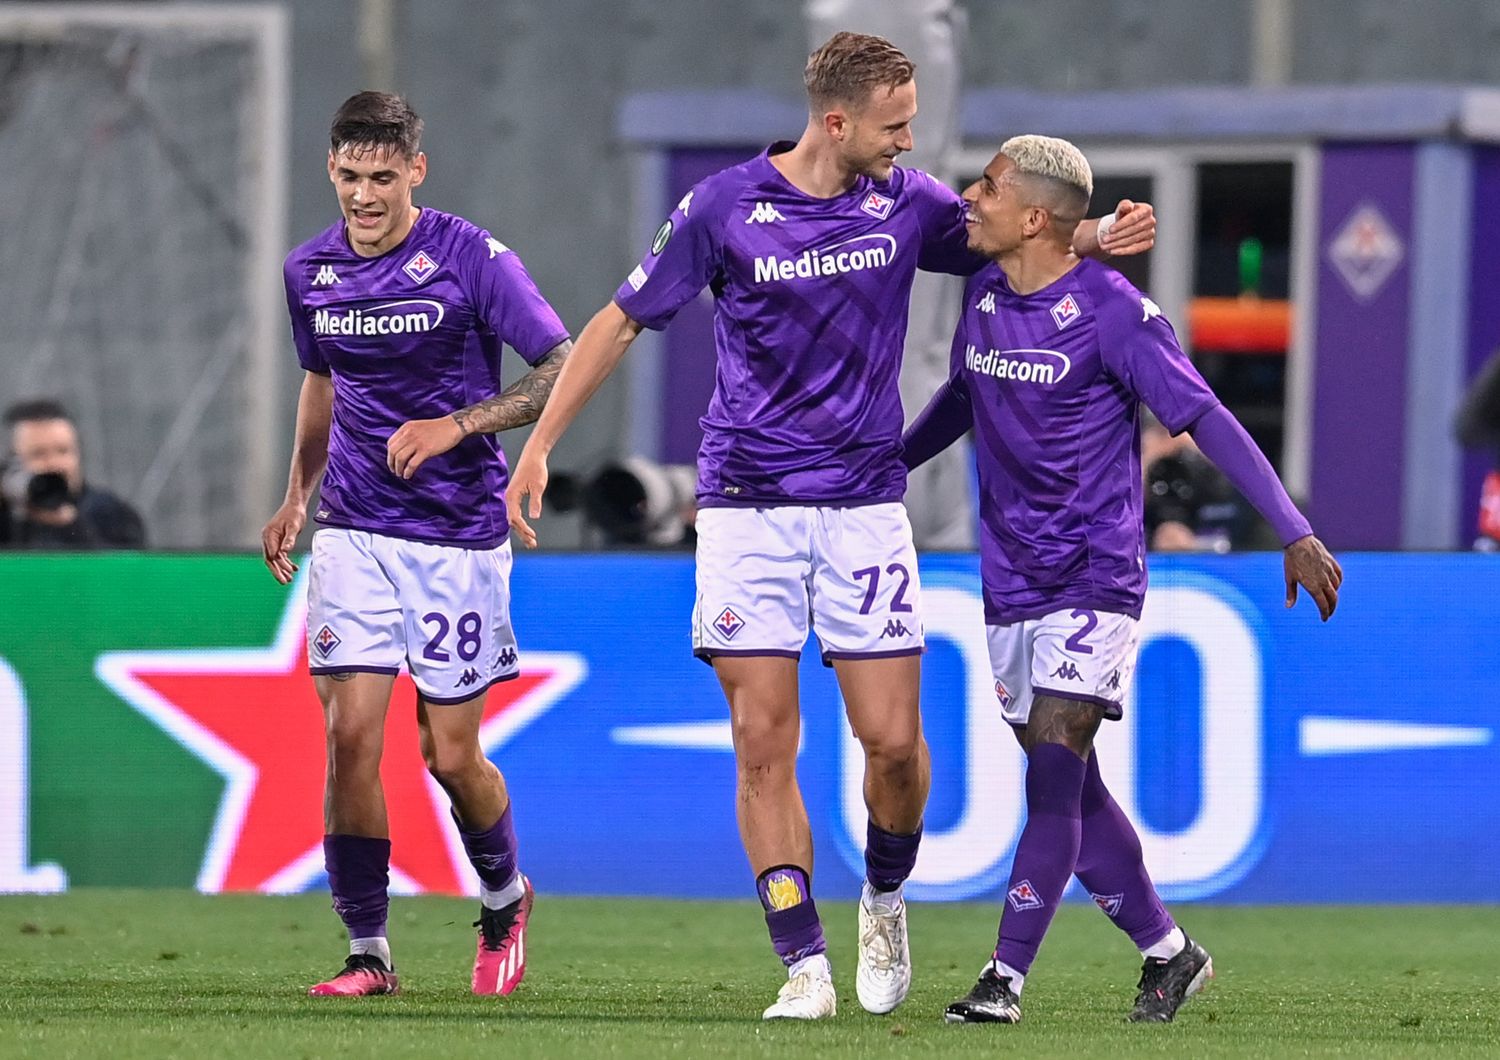 La Fiorentina dopo la vittoria sul Sivasspor